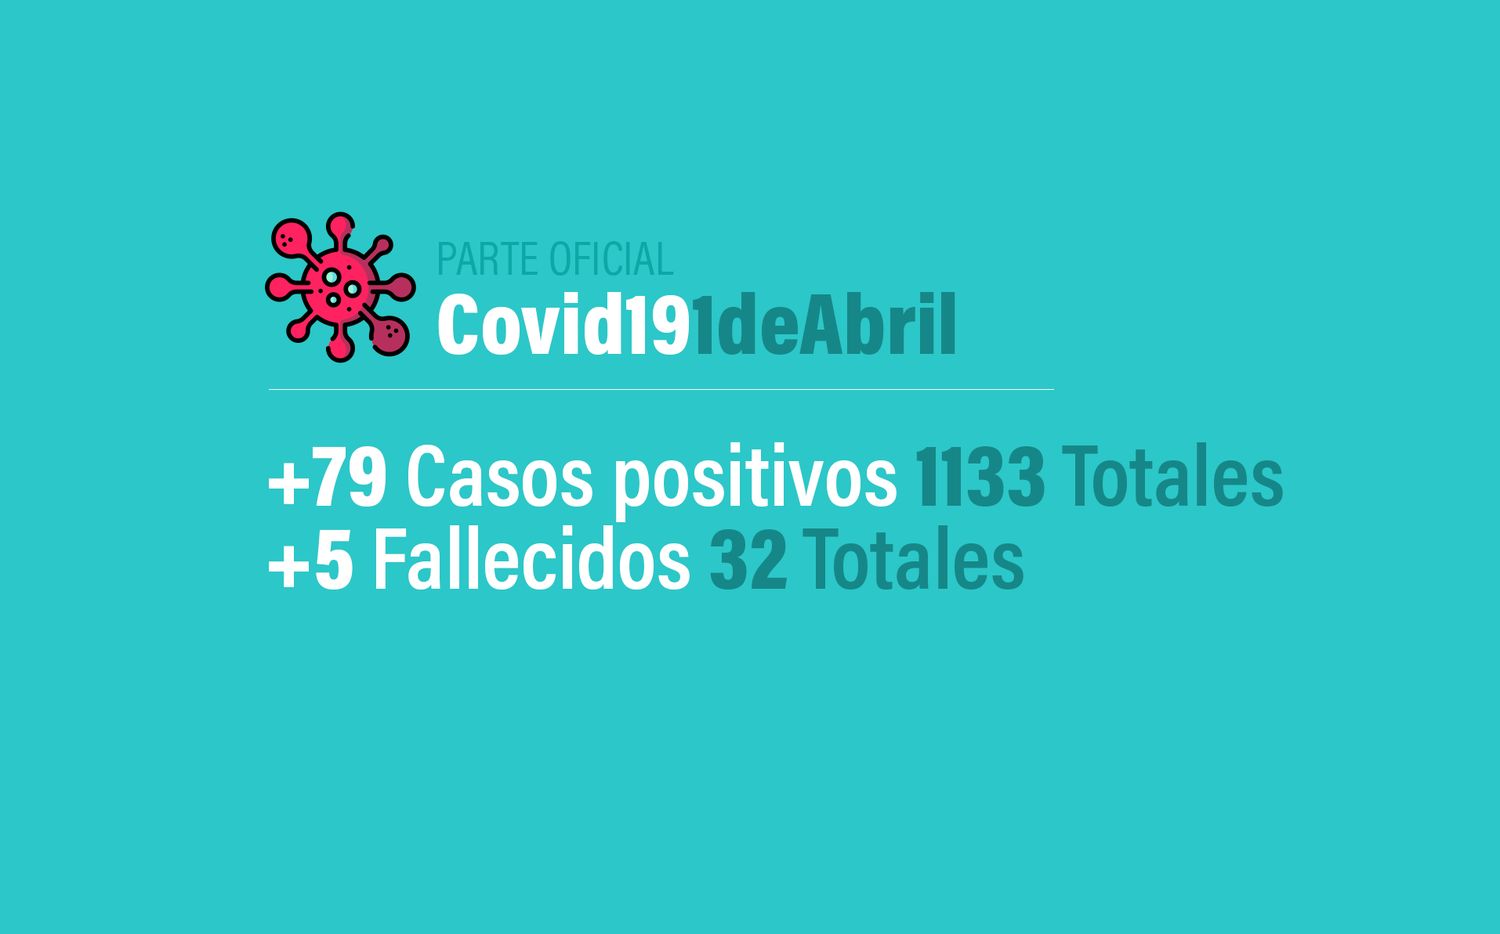 Coronavirus en Argentina: 79 nuevos casos, 1133 infectados y 32 muertos en total, al 1 de abril